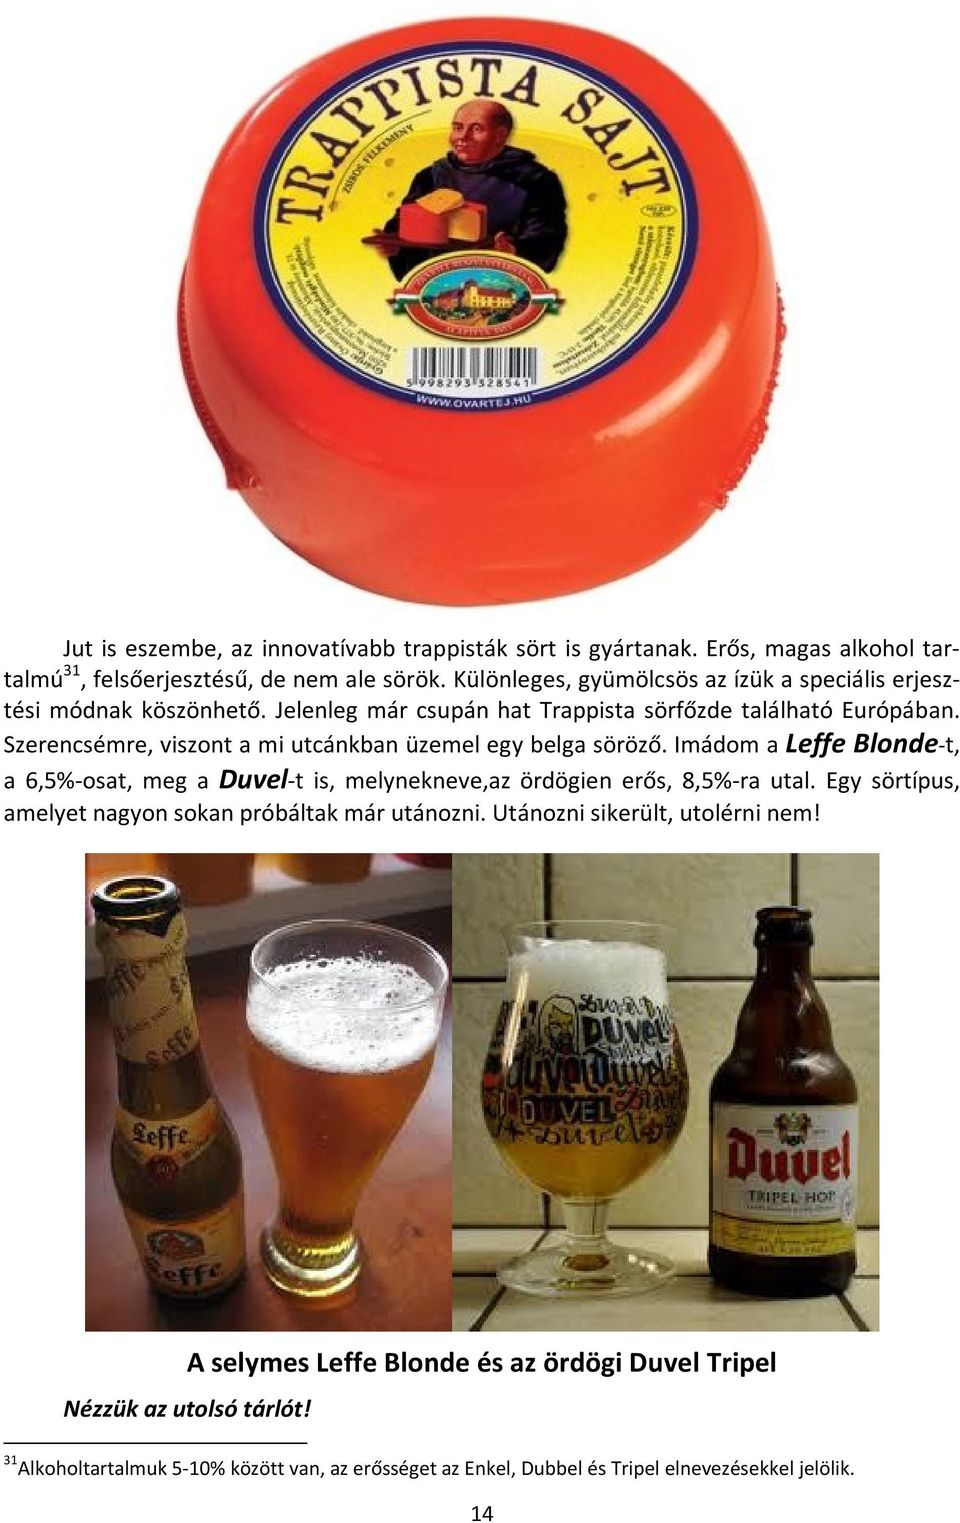 Szerencsémre, viszont a mi utcánkban üzemel egy belga söröző. Imádom a Leffe Blonde-t, a 6,5%-osat, meg a Duvel-t is, melynekneve,az ördögien erős, 8,5%-ra utal.